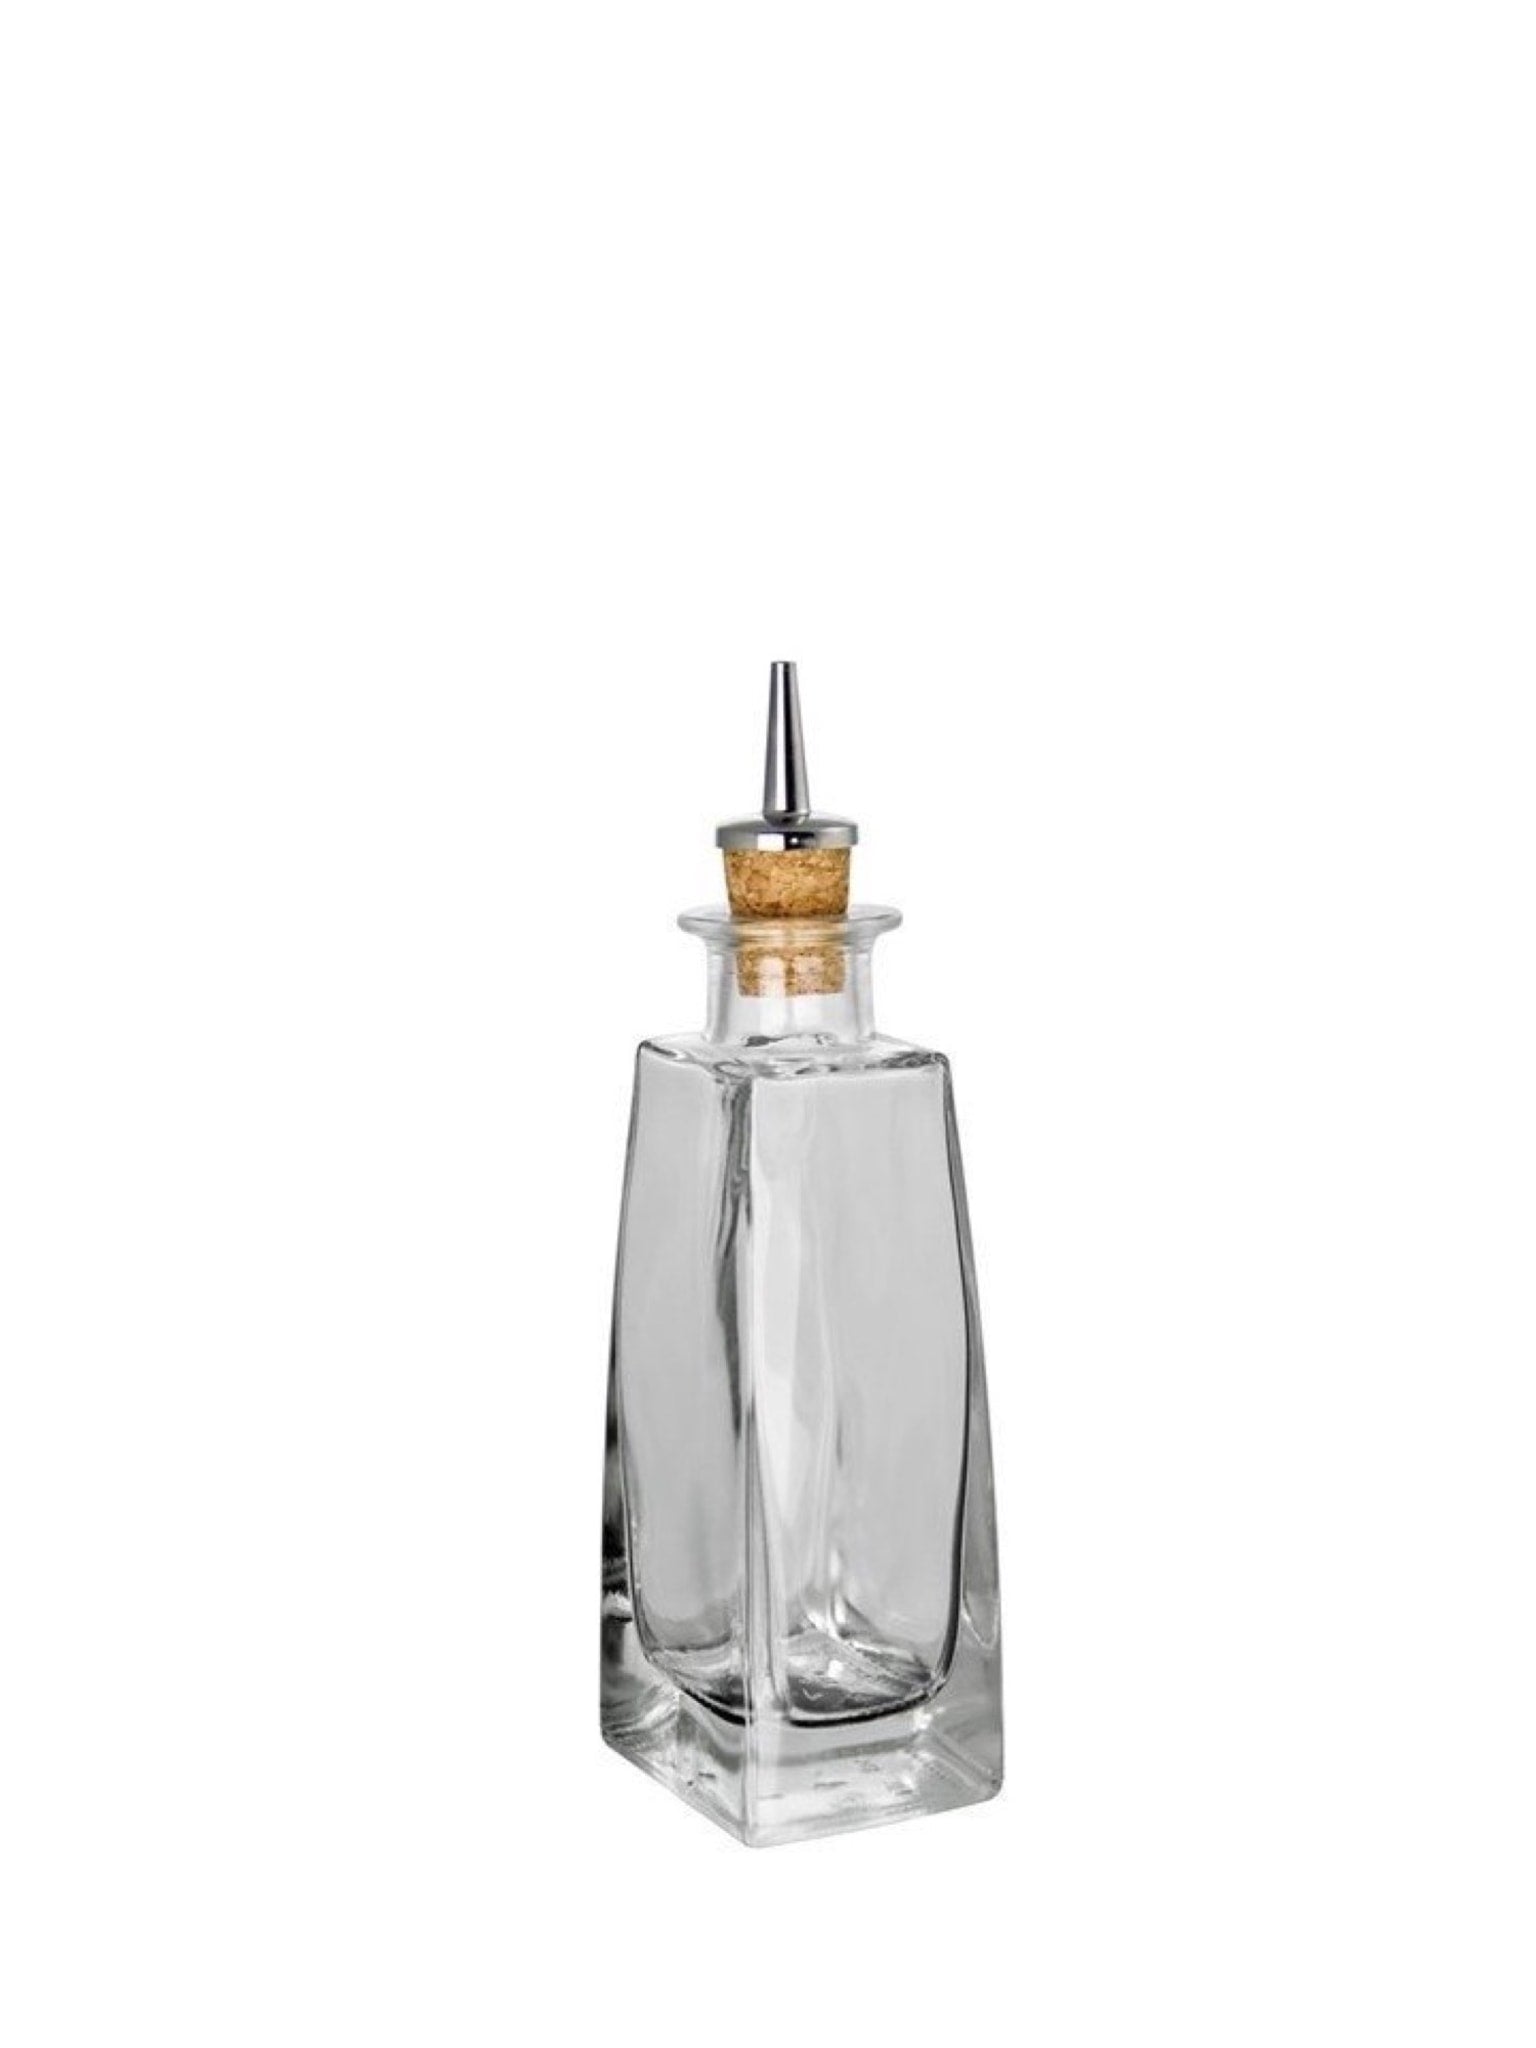 Dash-flaske i klassisk design - ideel til præcis dosering af bitters og sirup til cocktails.